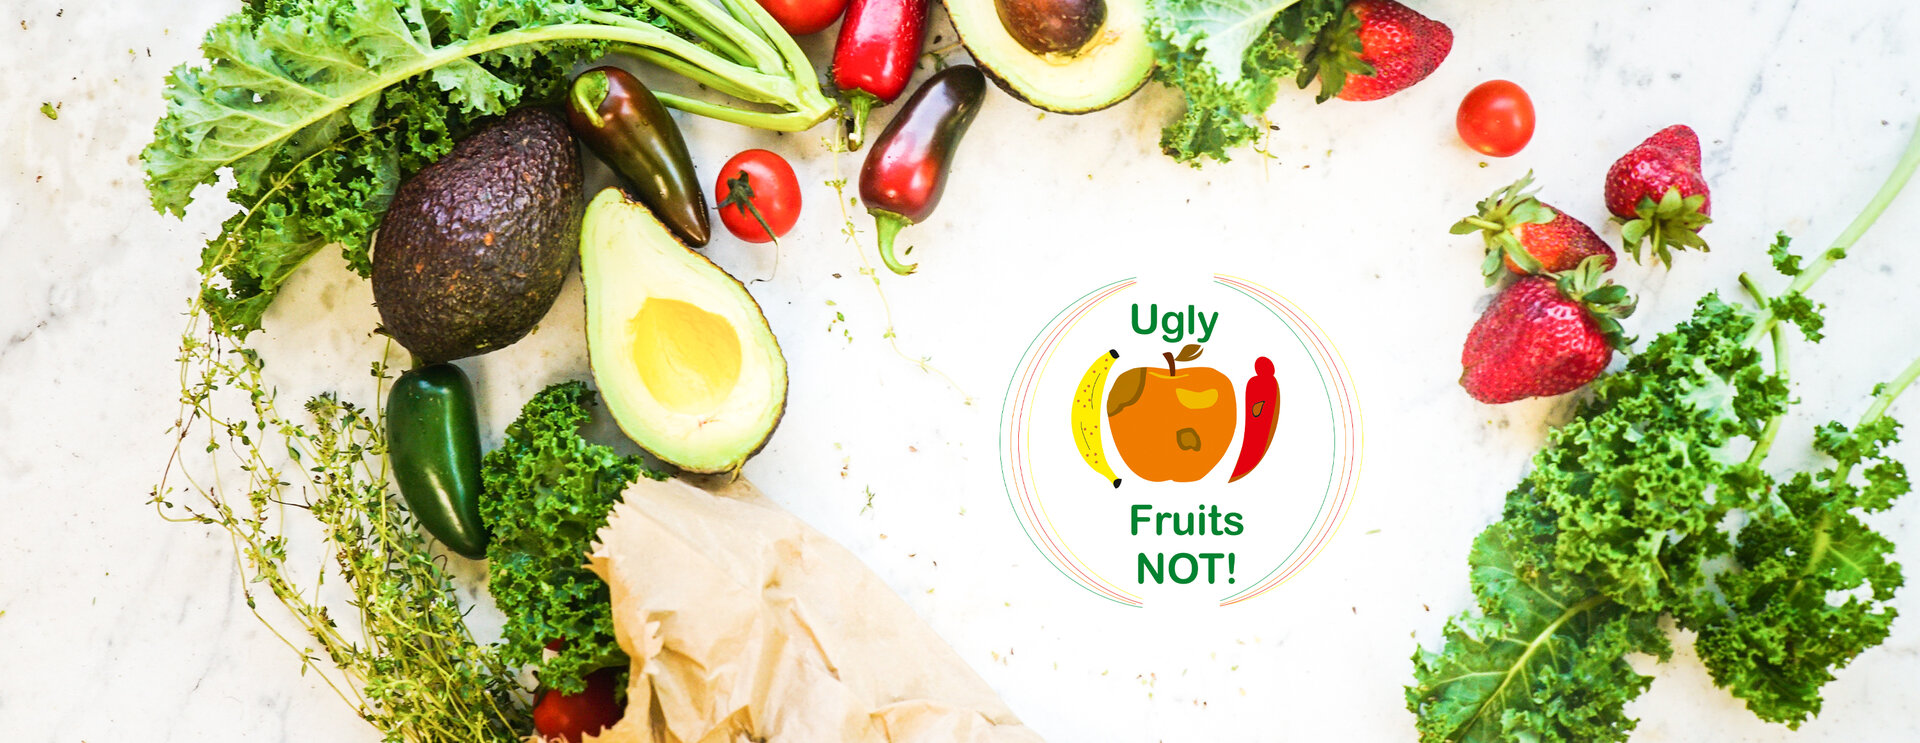 Foto von Gemüse und Früchten. In der Mitte des Fotos befindet sich das Logo des Projekts, das subperfekte Früchte zeigt und Gemüse und die Wörter „ ugly=